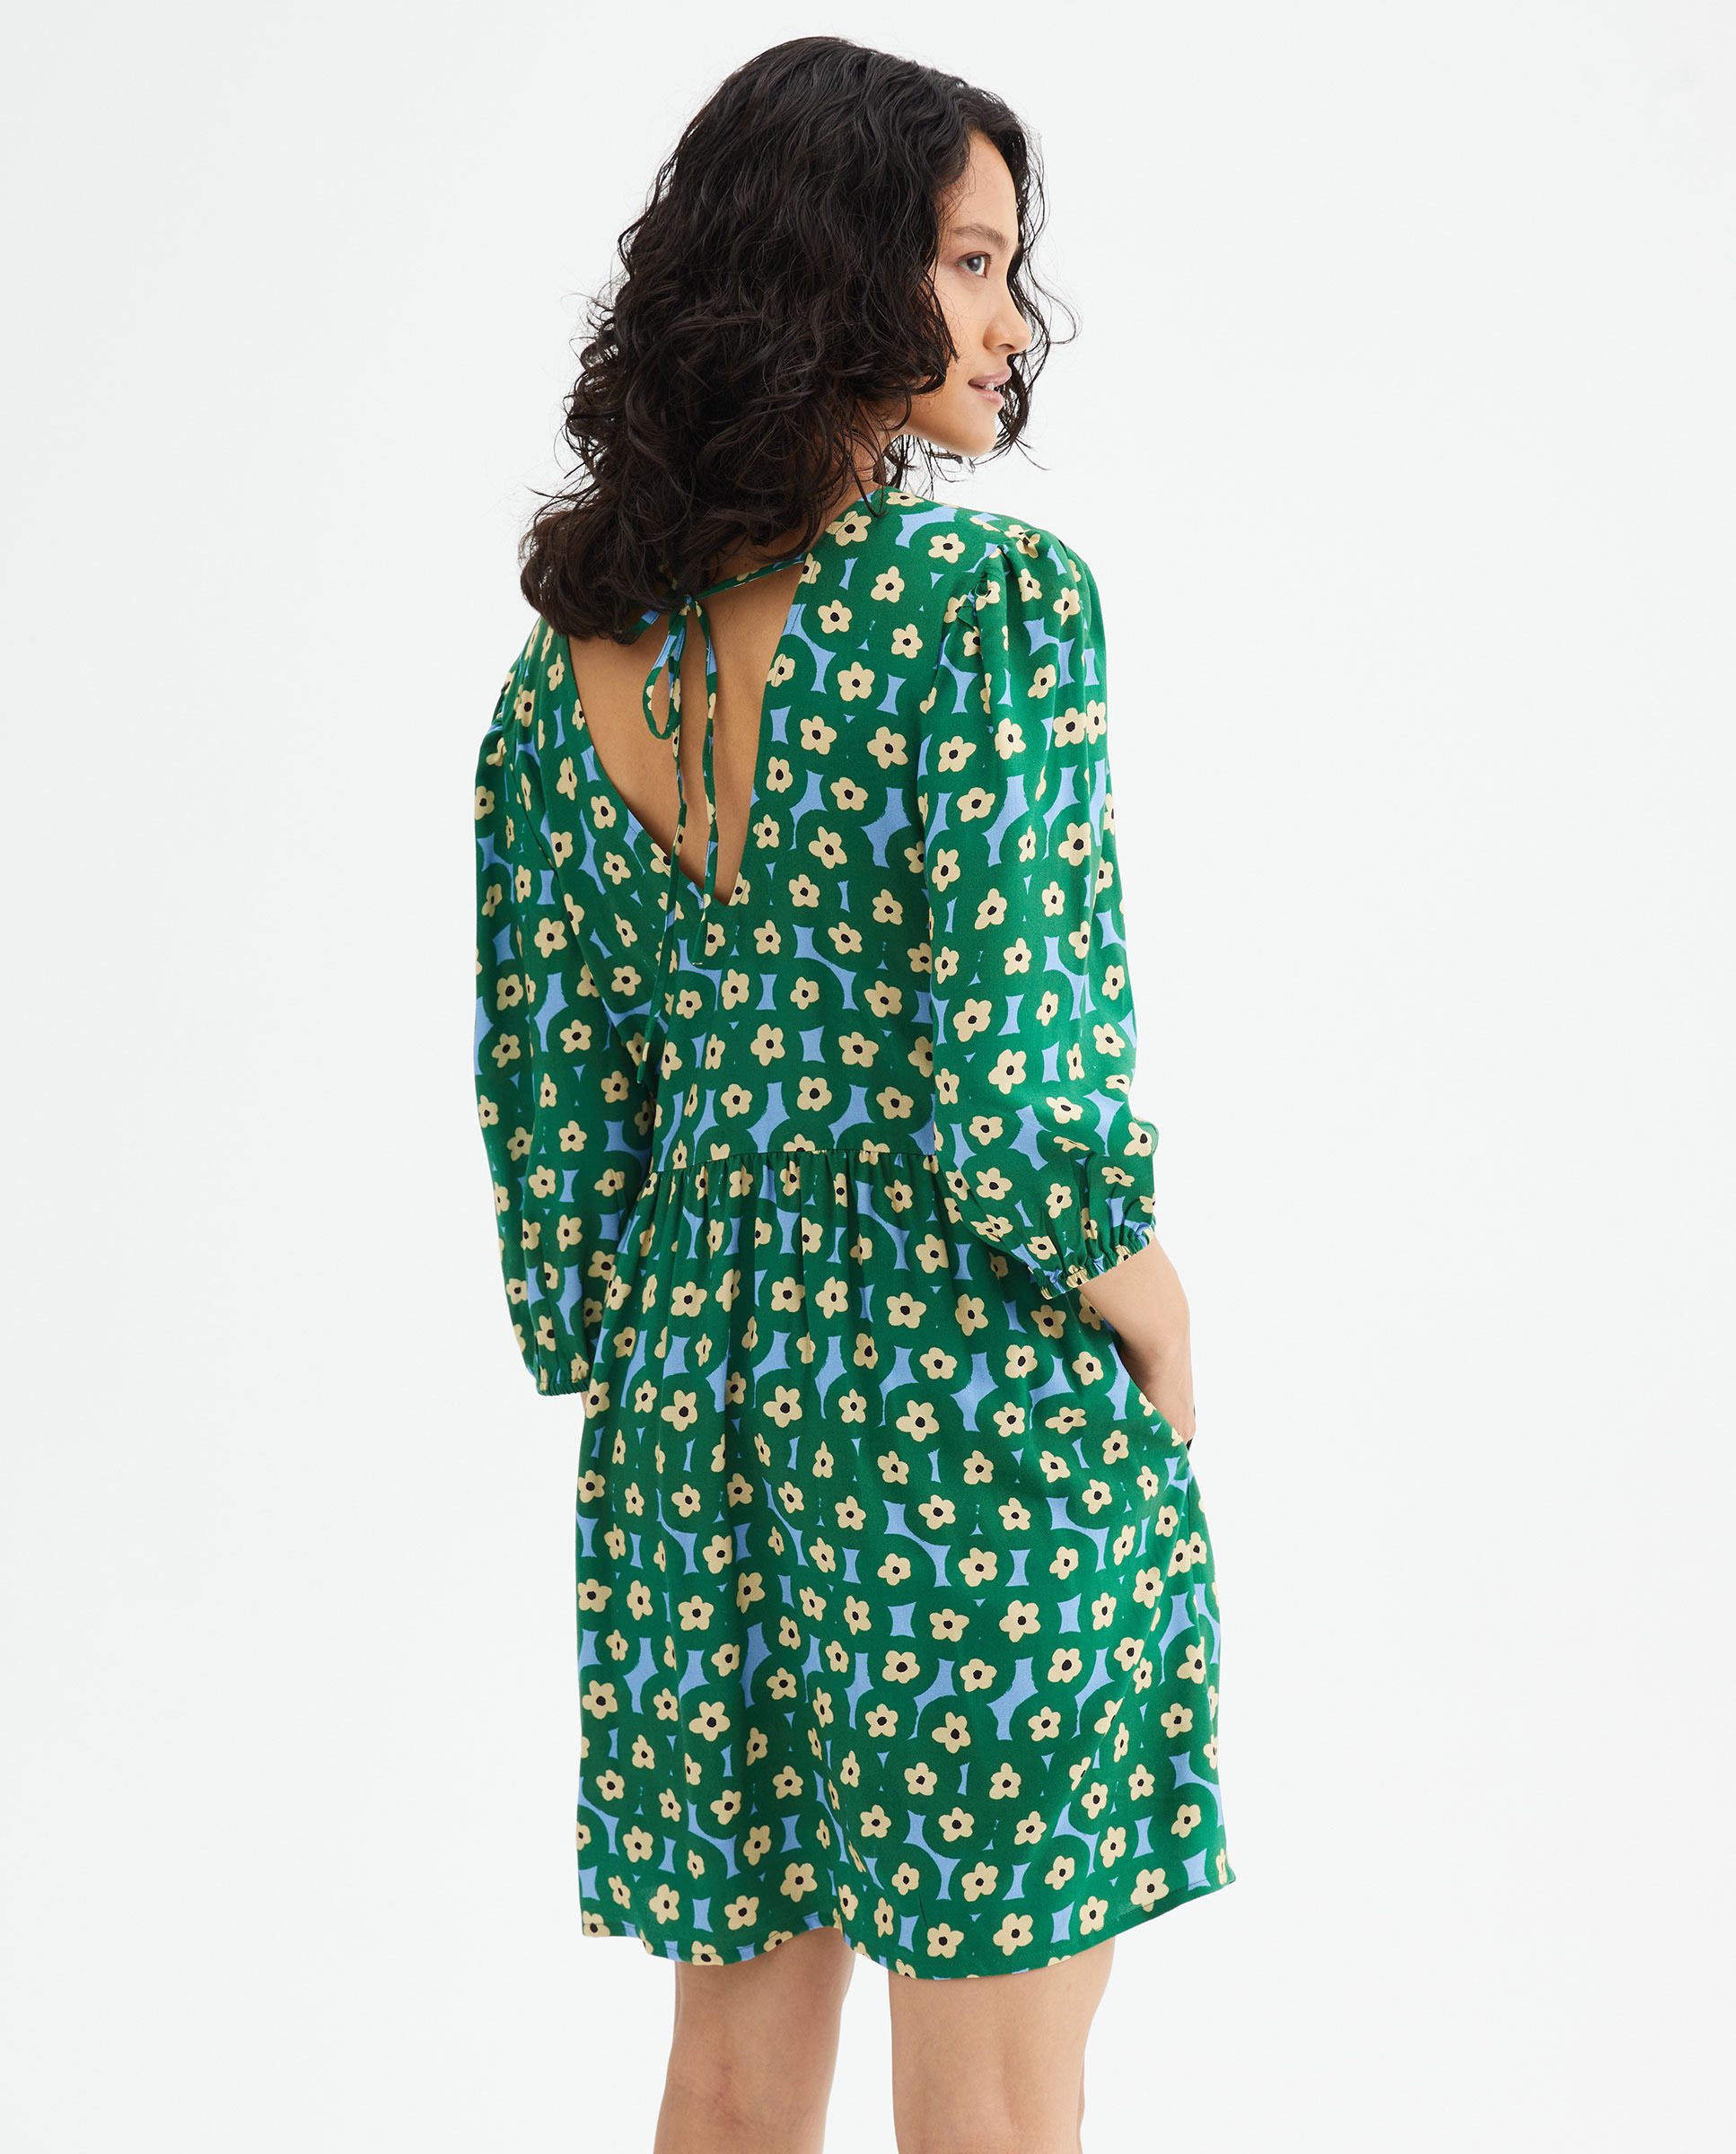 Μini Πράσινο Φόρεμα Με Print Λουλούδια Compania Fantastica